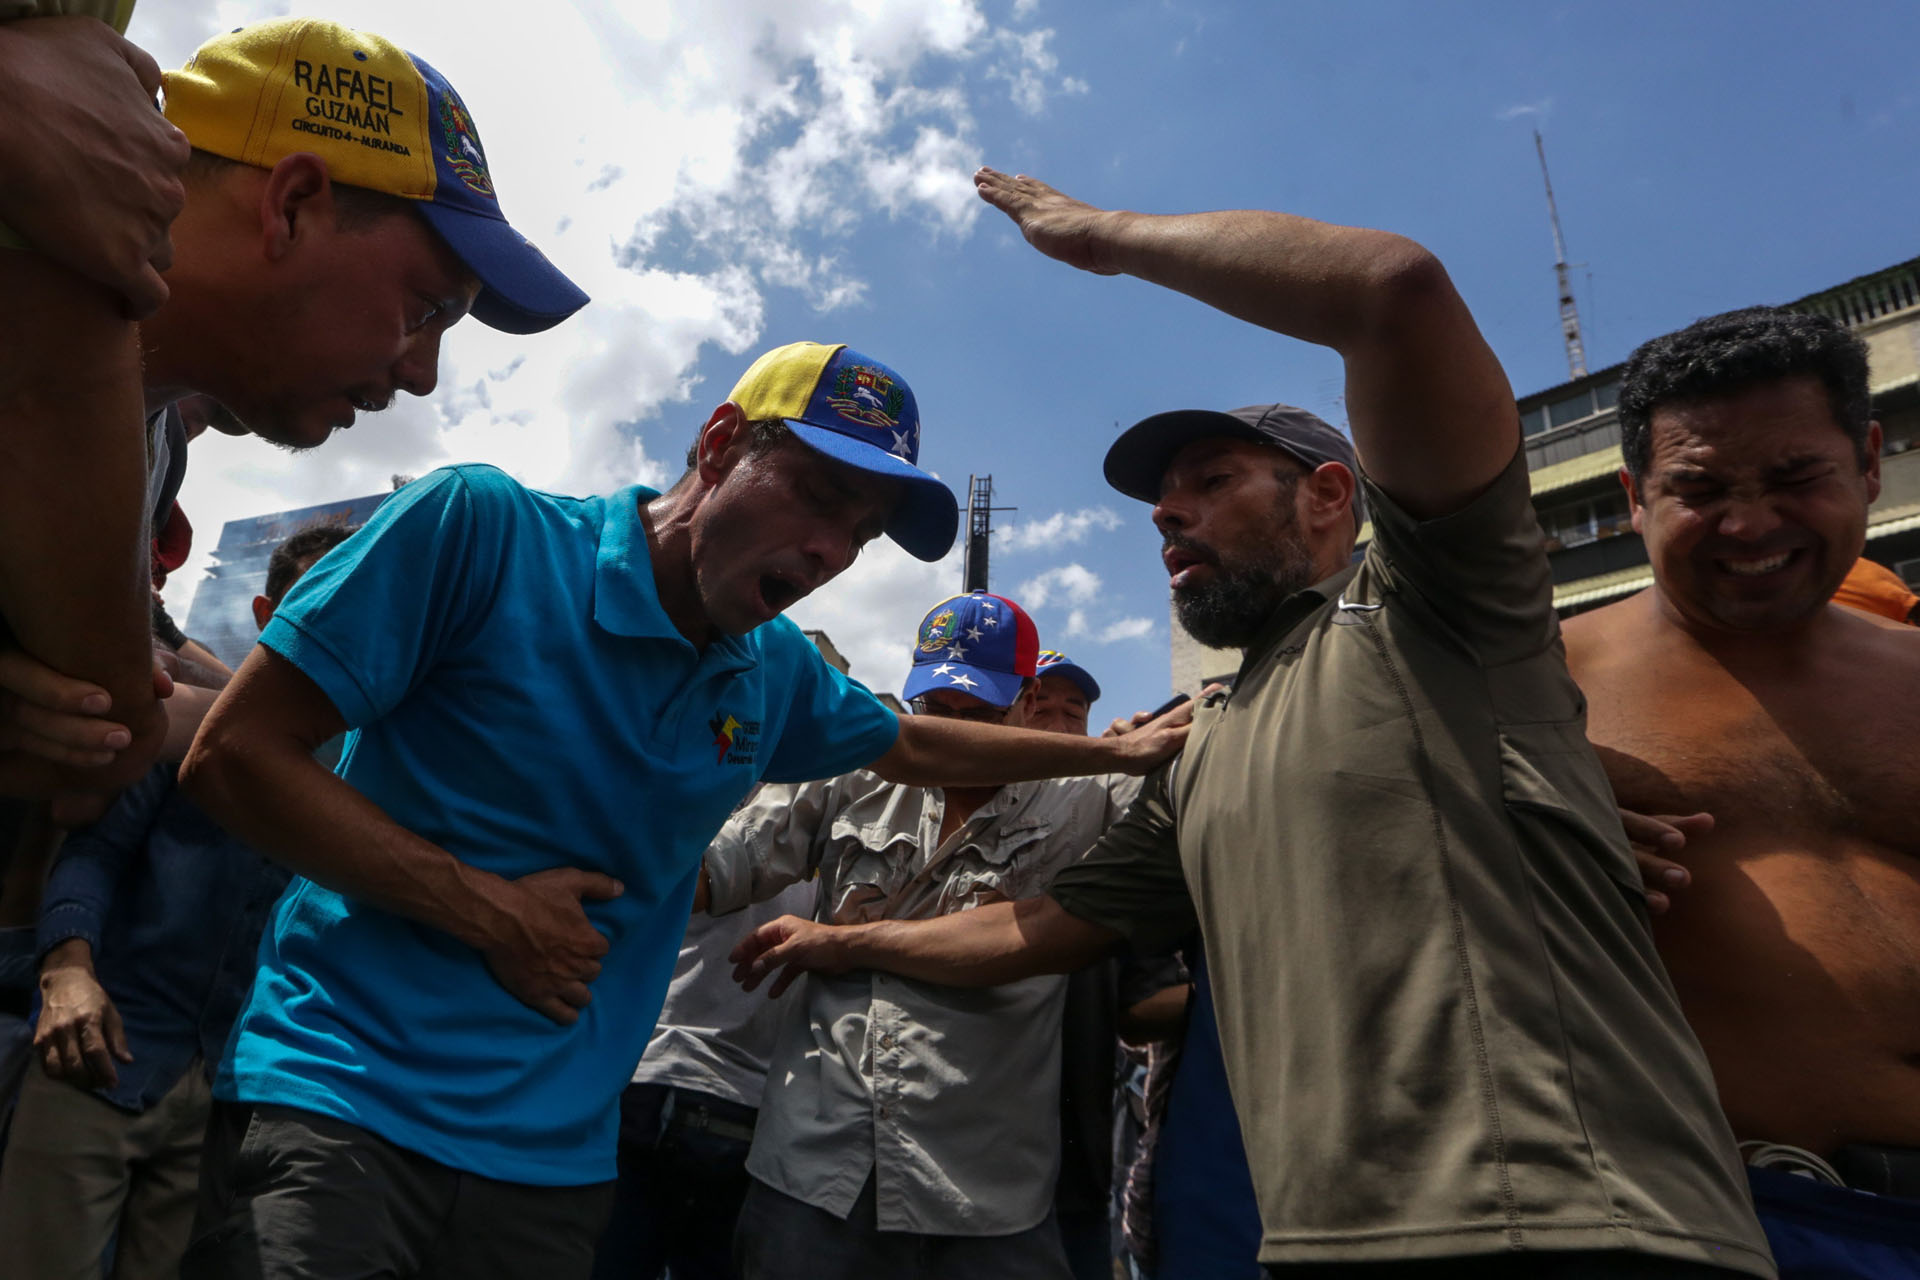 CAR01. CARACAS (VENEZUELA), 06/04/2017 - El líber opositor venezolano Henrique Capriles (c) es afectado por gases lacrimógenos durante una manifestación contra el gobierno venezolano hoy, jueves 6 de abril de 2017, en Caracas (Venezuela). La alianza de partidos Mesa de la Unidad Democrática (MUD), contraria al Gobierno de Nicolás Maduro, aseguró hoy que los venezolanos se manifestaron este jueves en ocho ciudades de Venezuela en contra de los magistrados del Tribunal Supremo de Justicia (TSJ) a quienes acusan de haber dado un "golpe de Estado". EFE/CRISTIAN HERNÁNDEZ